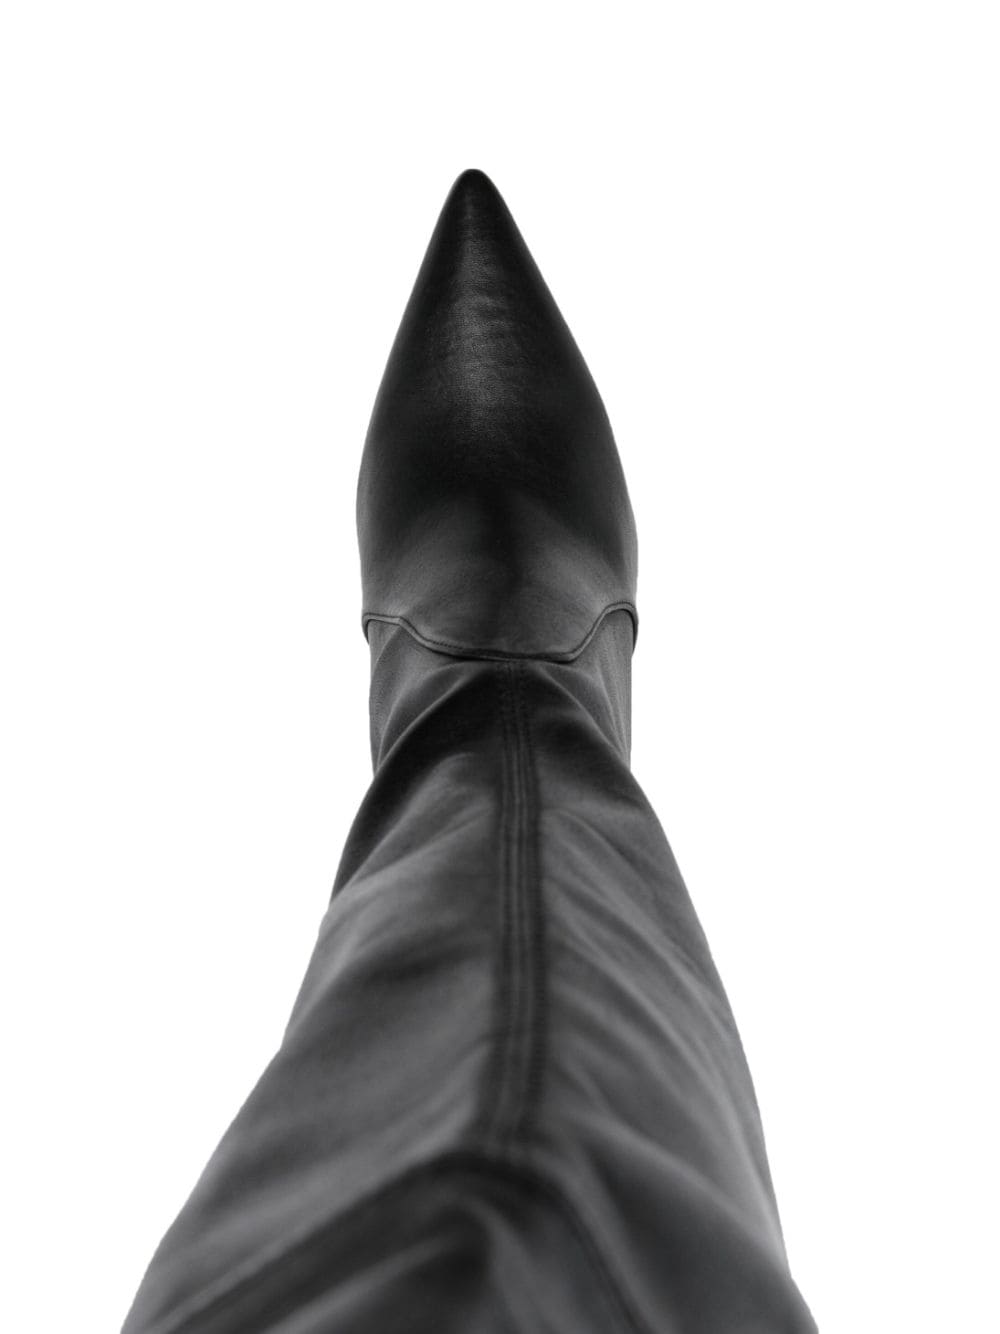 Ultrastuart 110mm leather boots